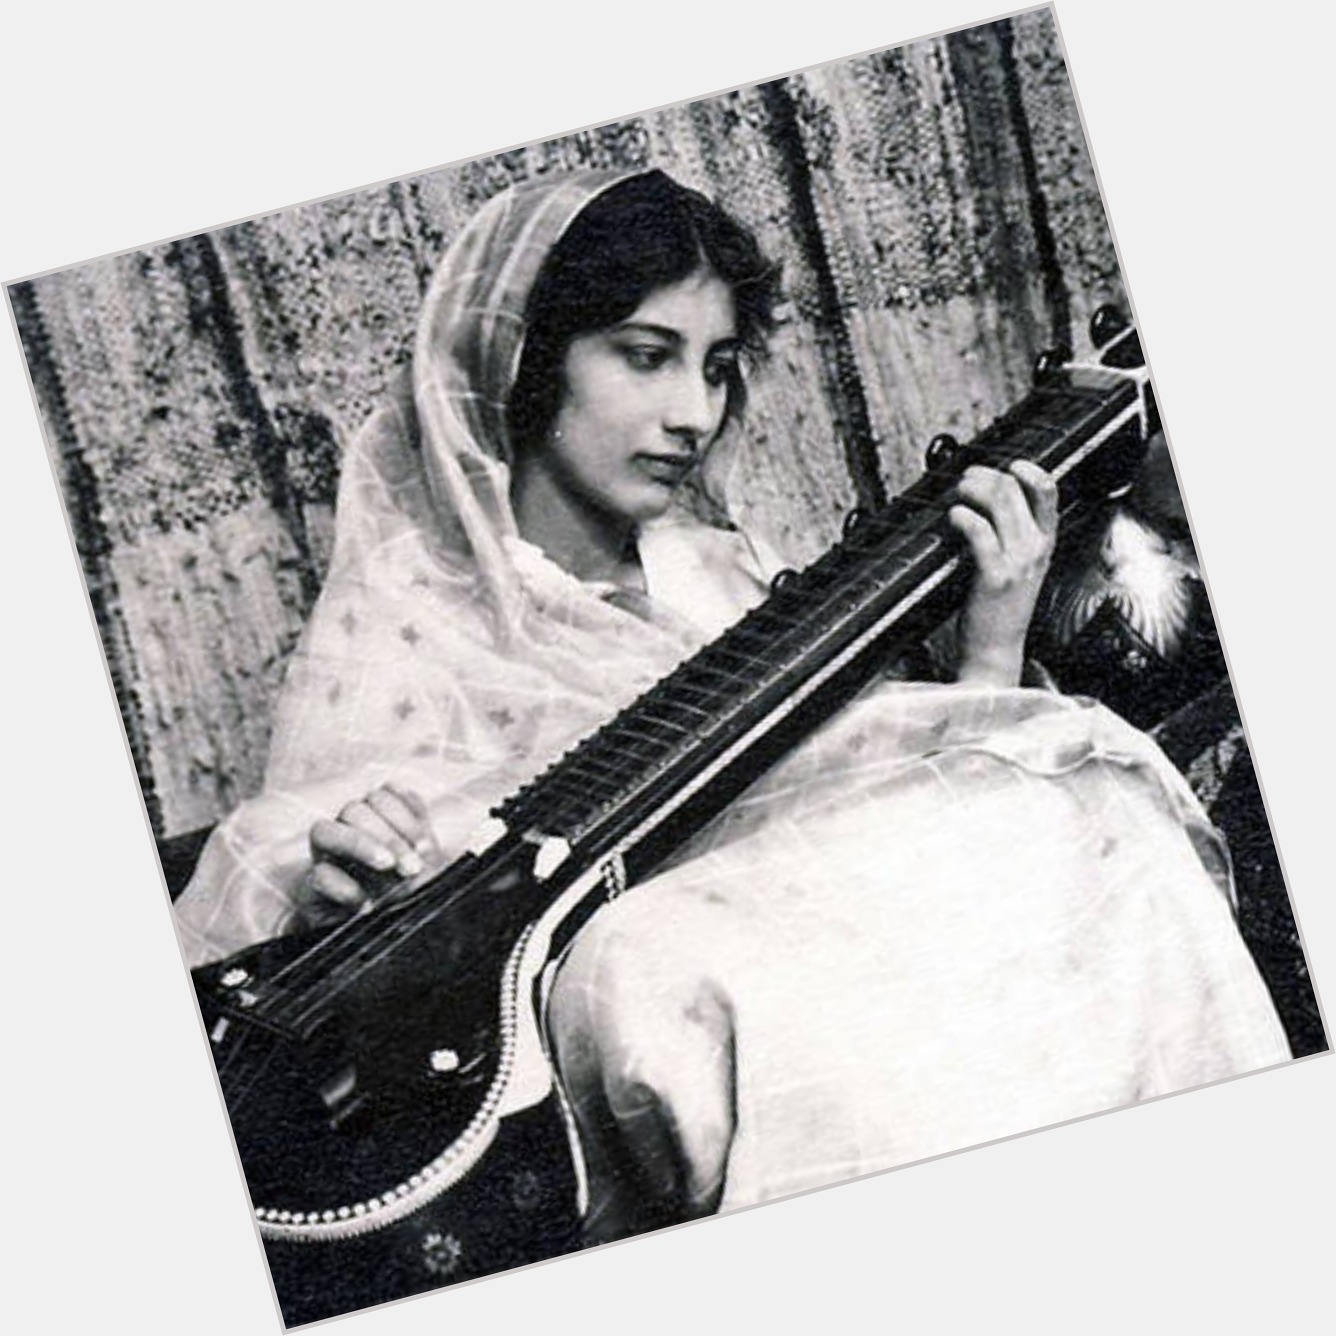 <a href="/hot-women/noor-inayat-khan/where-dating-news-photos">Noor Inayat Khan</a>  